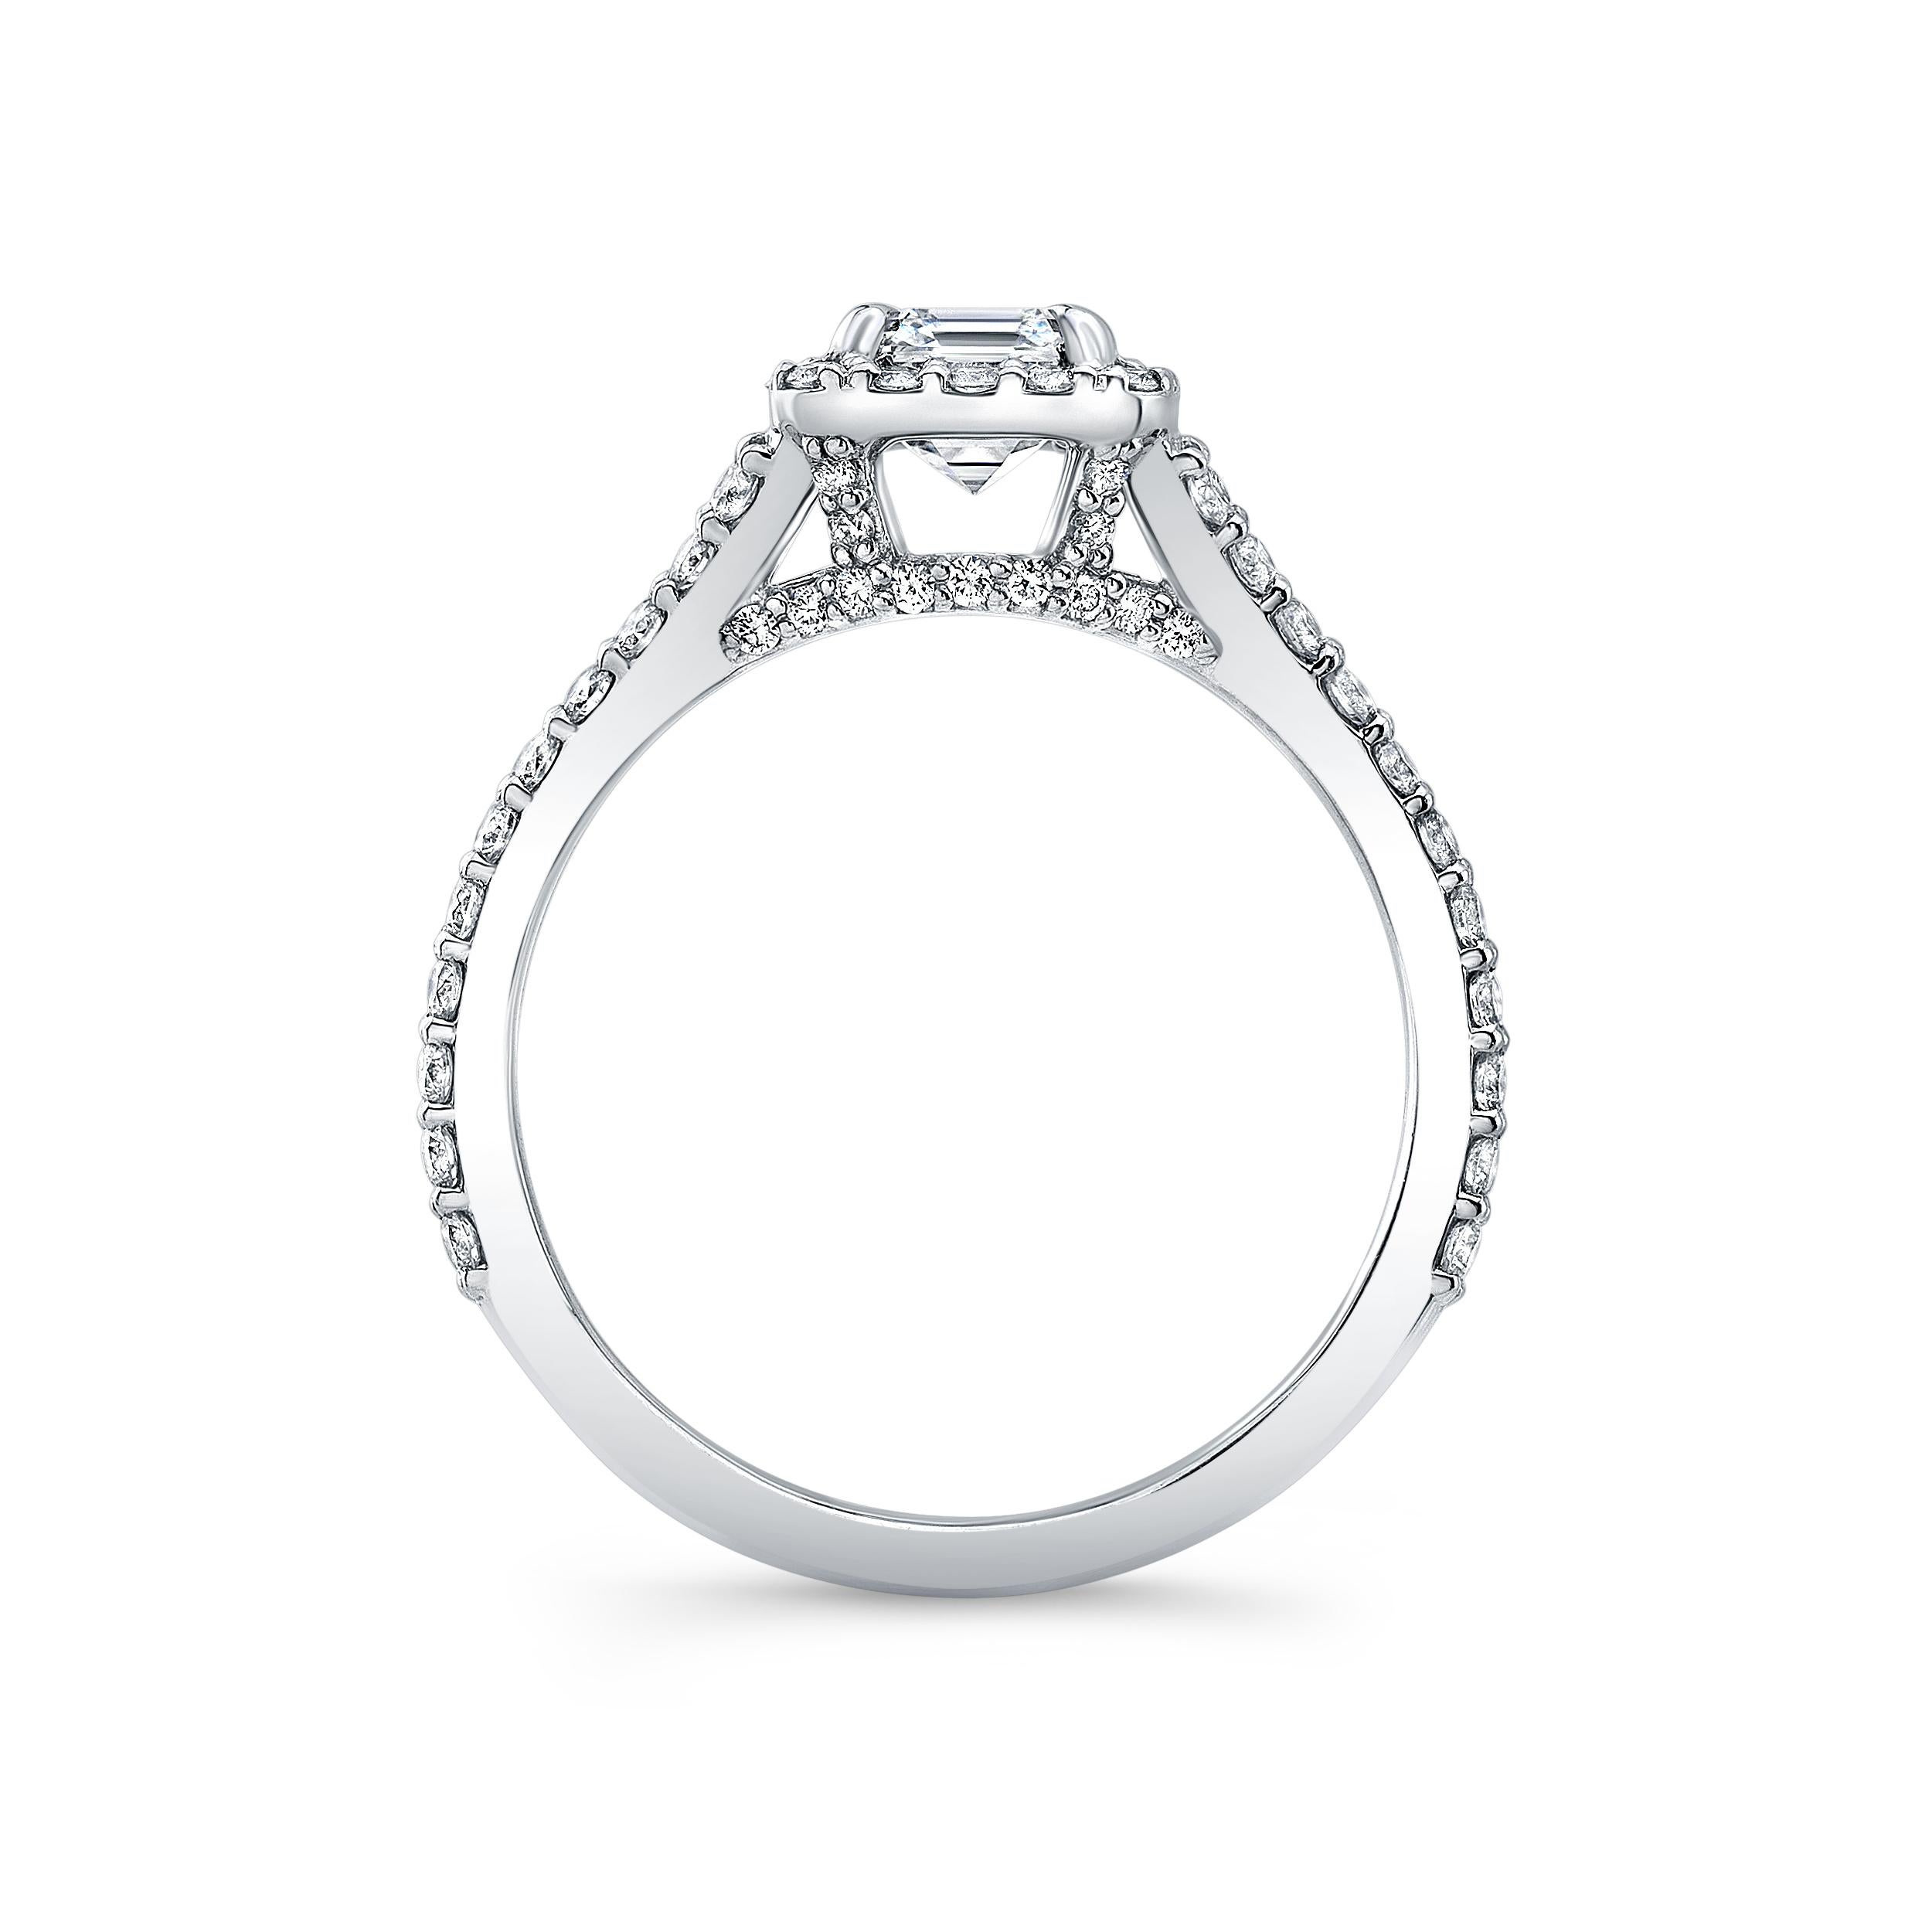 Diamant im Asscher-Schliff von 0,76 Karat, gefasst in einem Pavé-Ring mit geteiltem Schaft aus Platin.
Farbe H Klarheit VS2
Pavé-Diamanten 0,71 Gesamtgewicht
GIA
6,5 Ringgröße